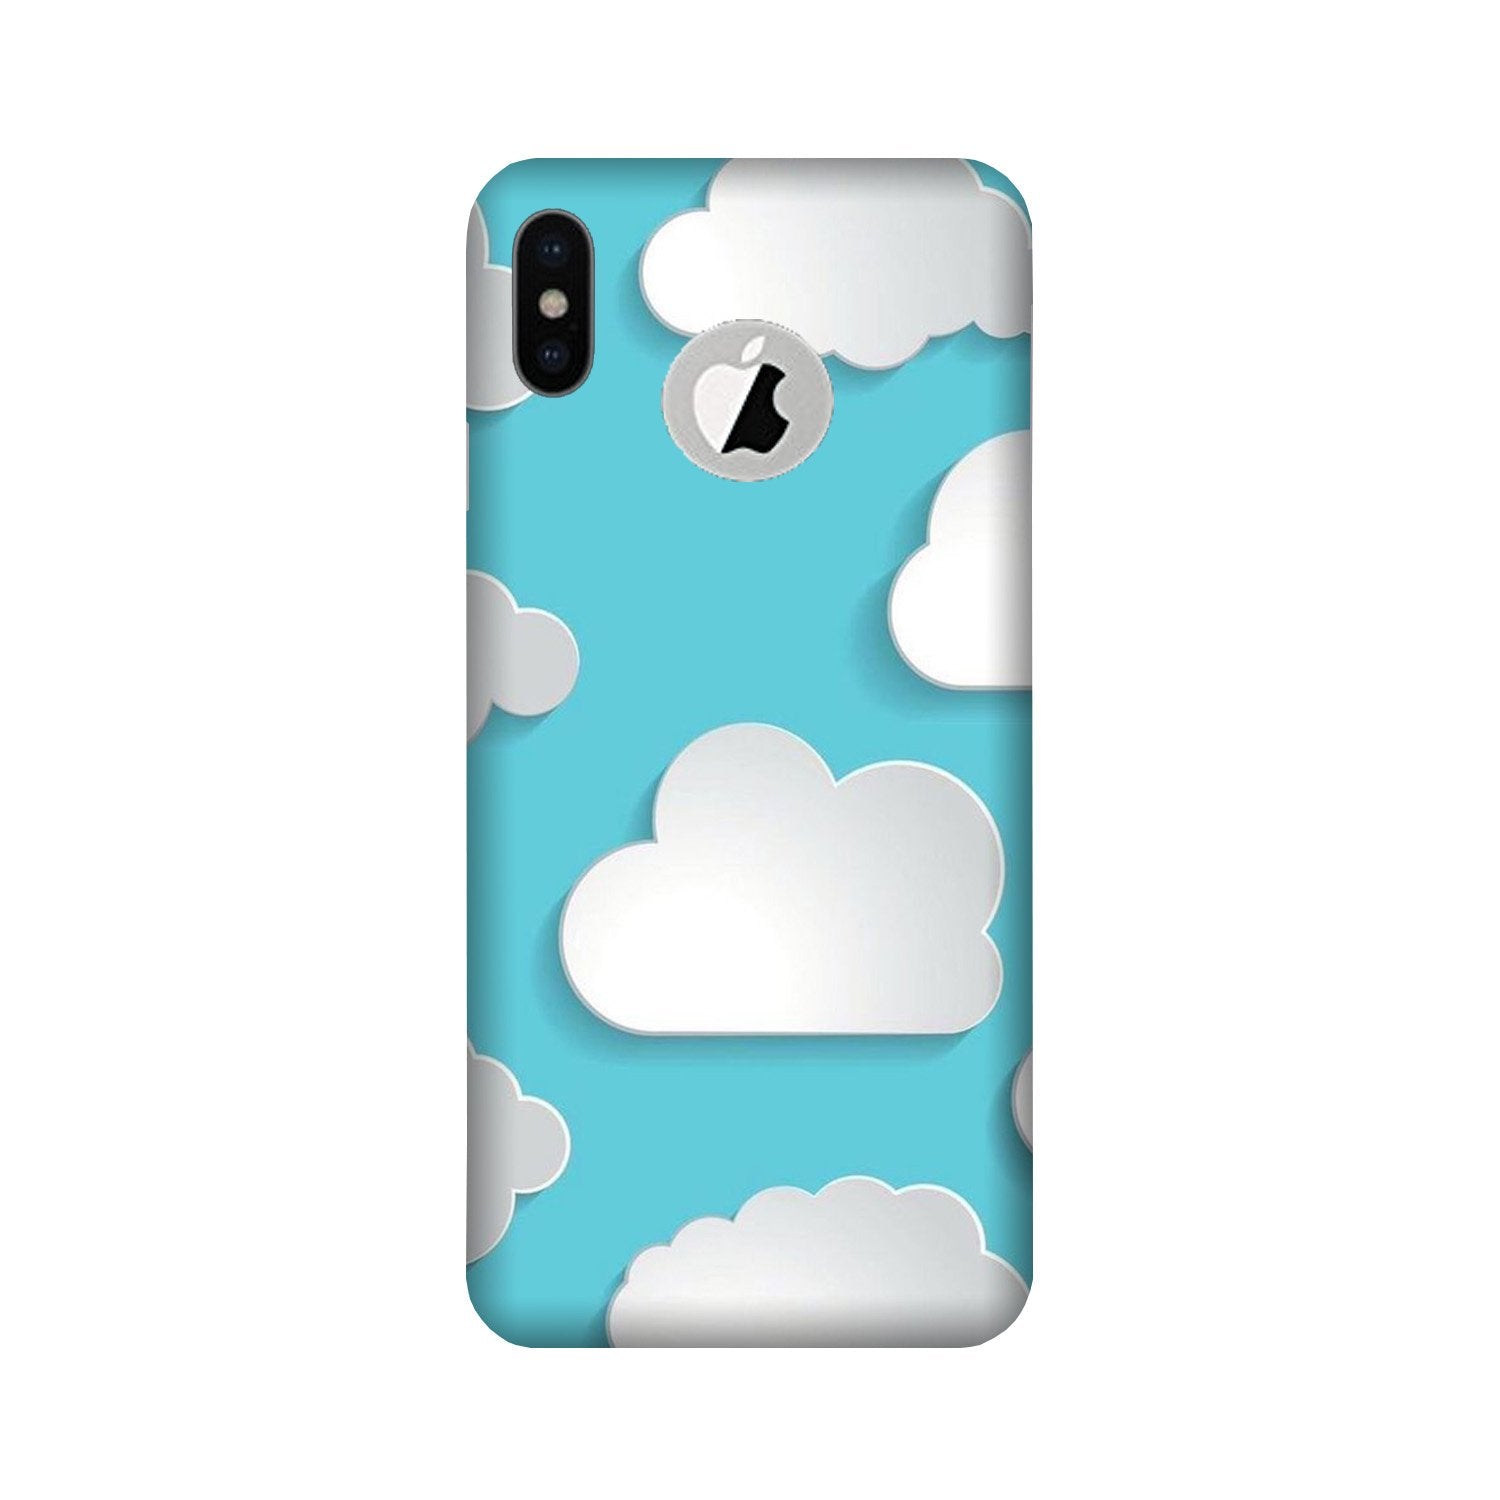 Clouds Case for iPhone X logo cut (Design No. 210)